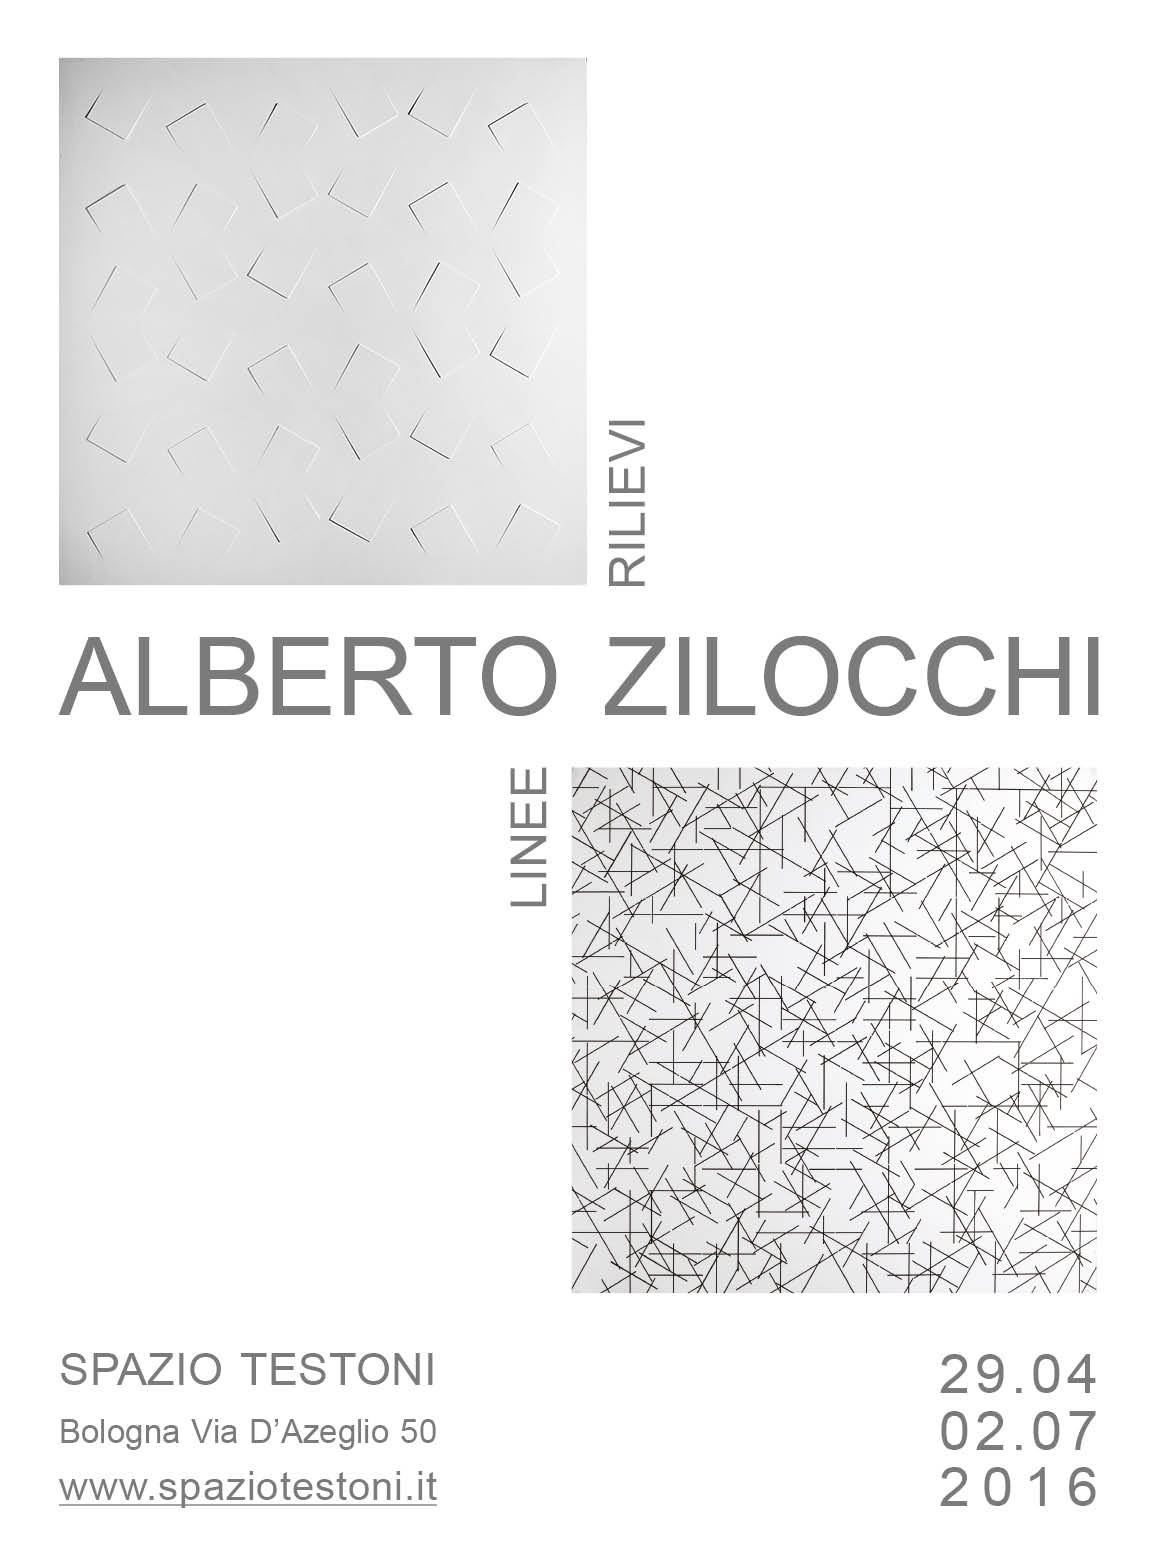 Alberto Zilocchi – Rilievi e linee